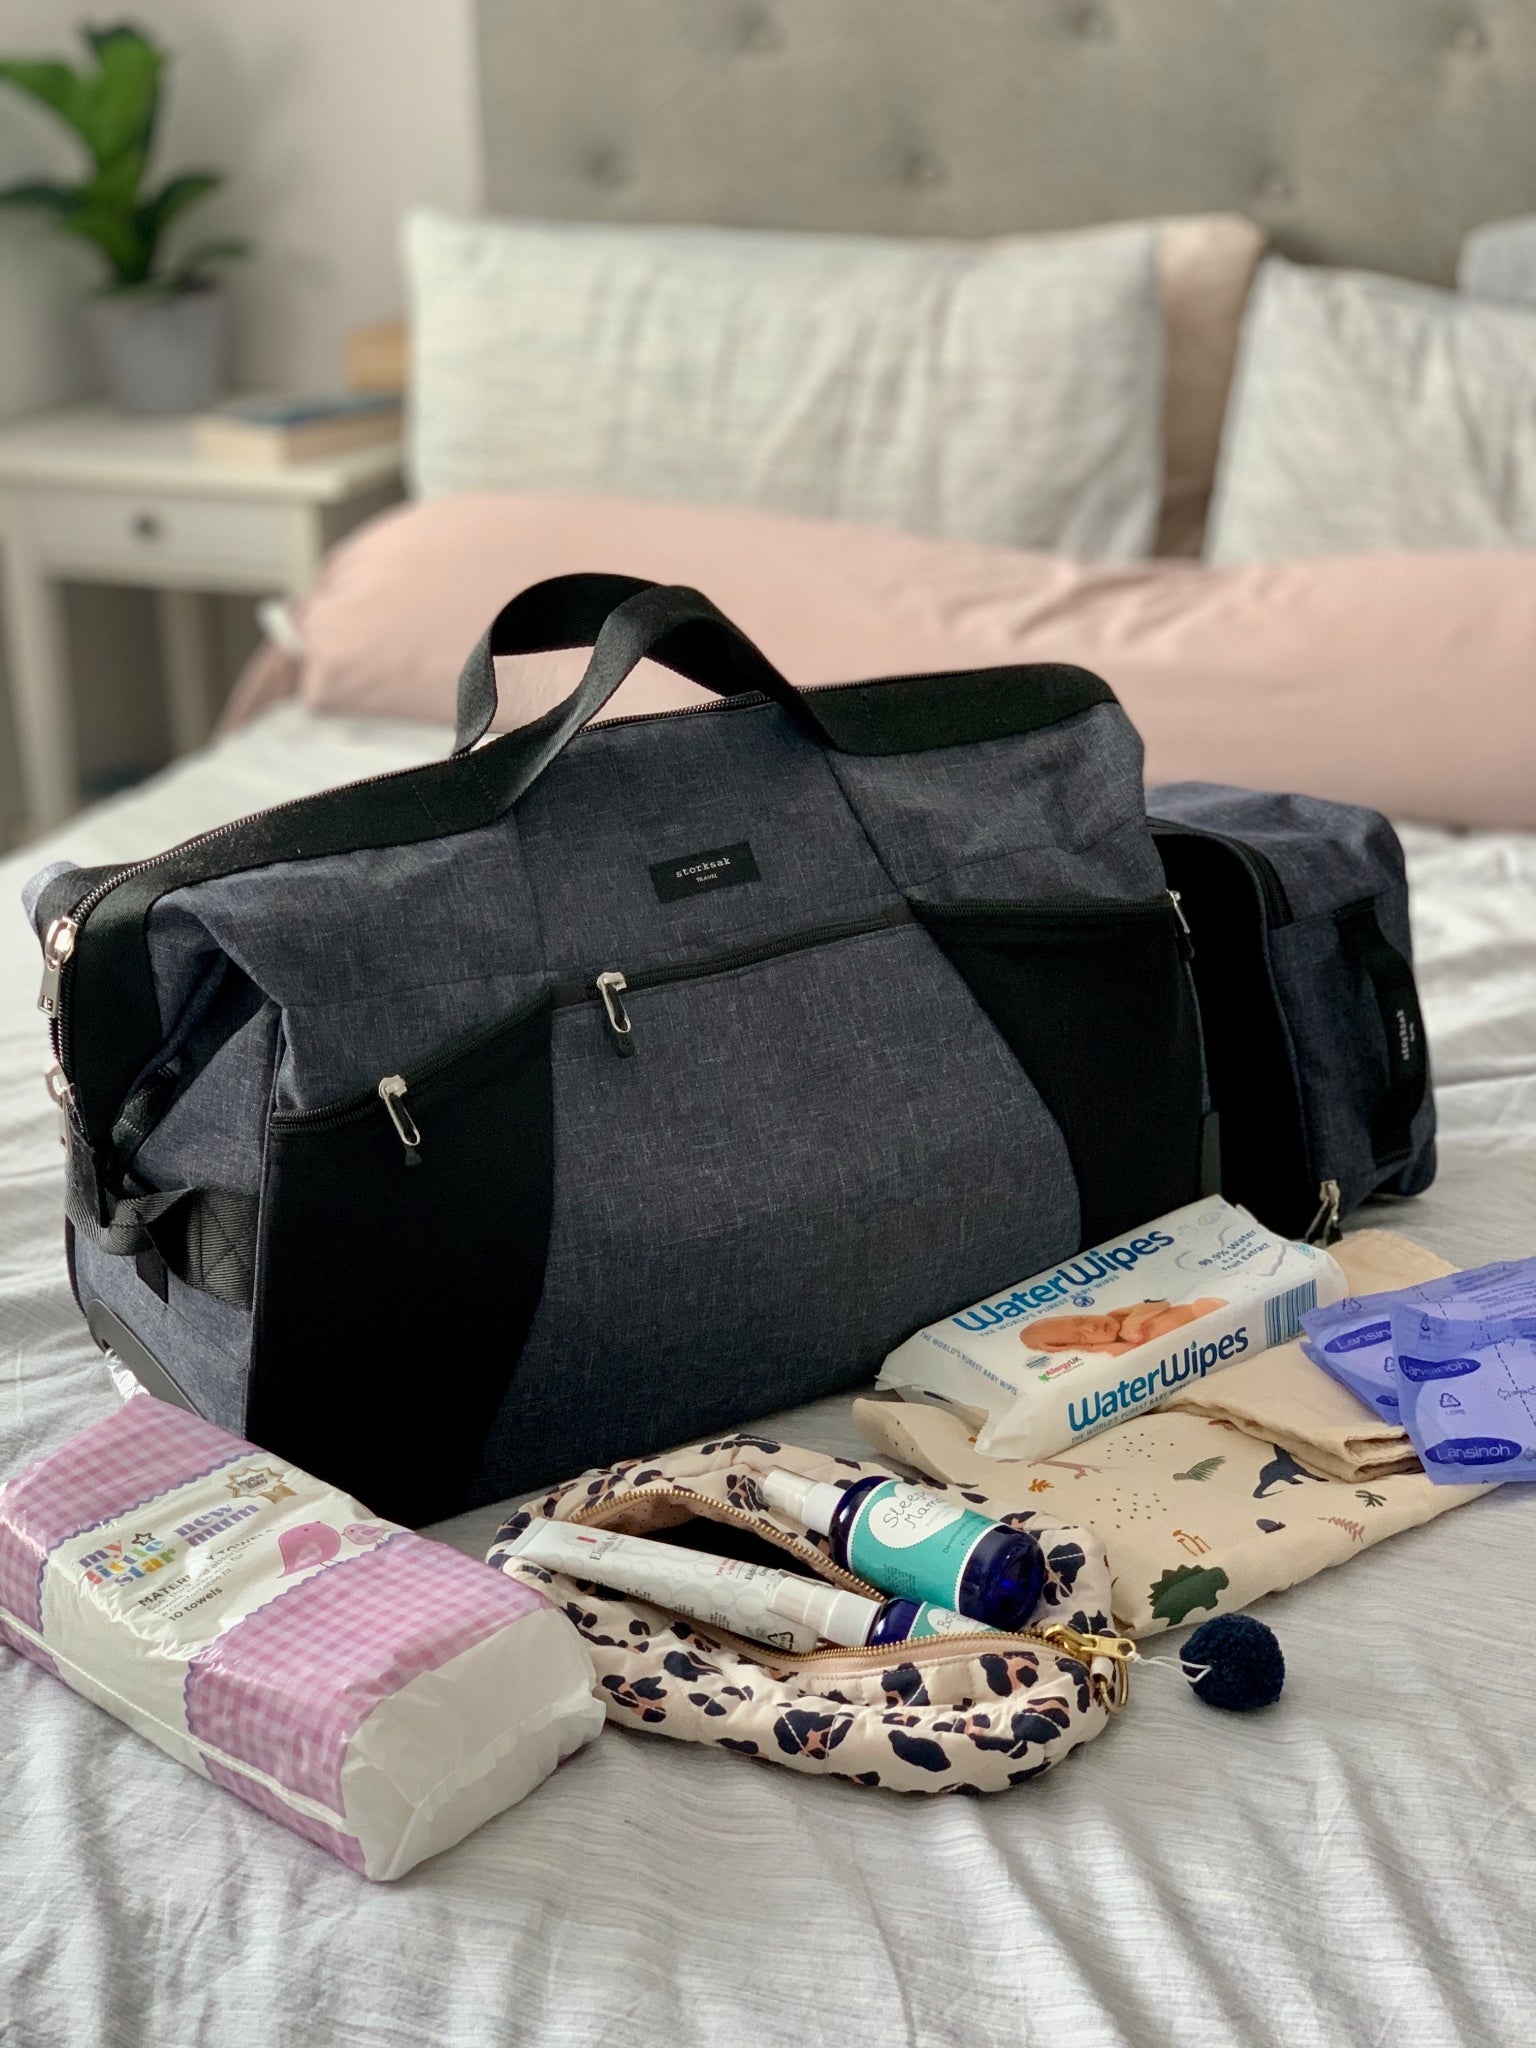 Hospital Bag Checklist: What should I pack? – Storksak®